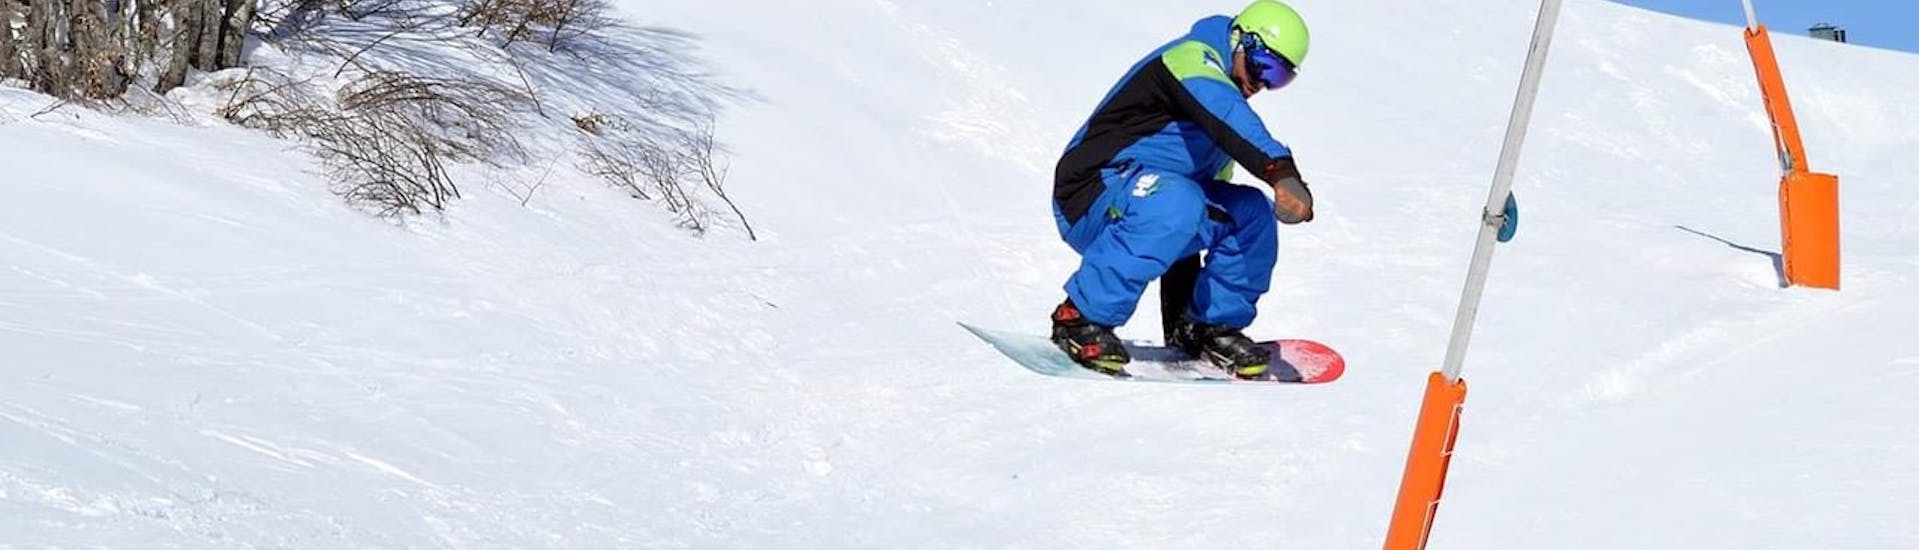 Clases de snowboard a partir de 16 años para principiantes.